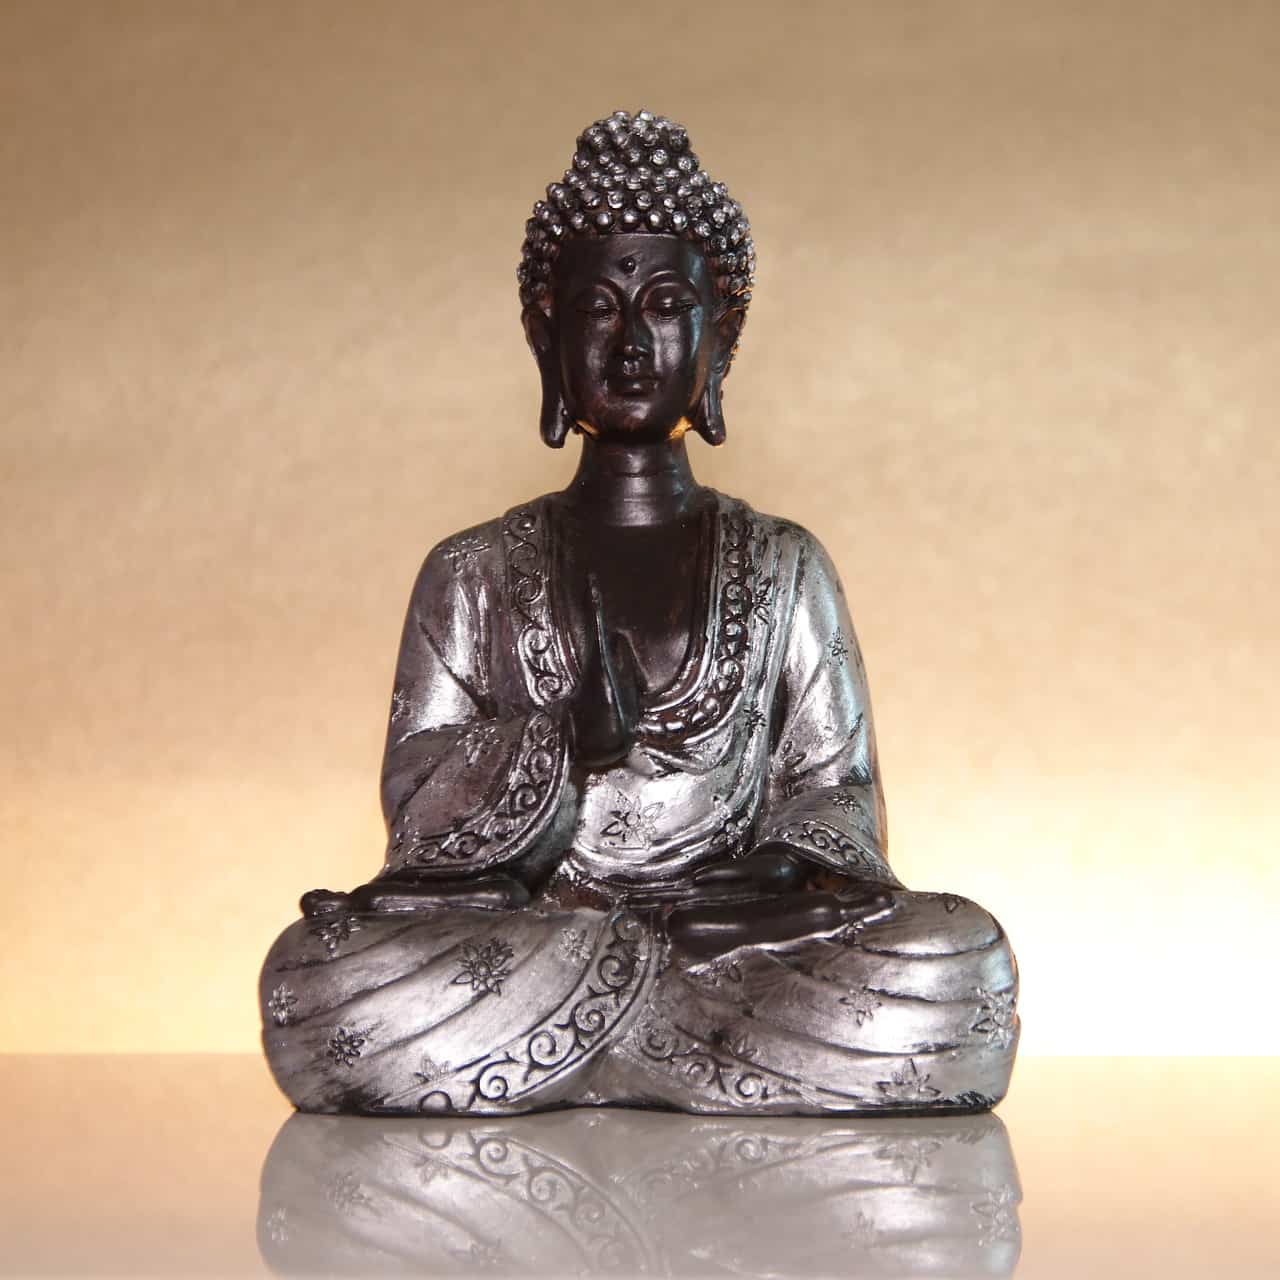 Silberne Buddha-Statue im Lotossitz sitzt auf einer spiegelten Oberfläche und goldener Rückwand.